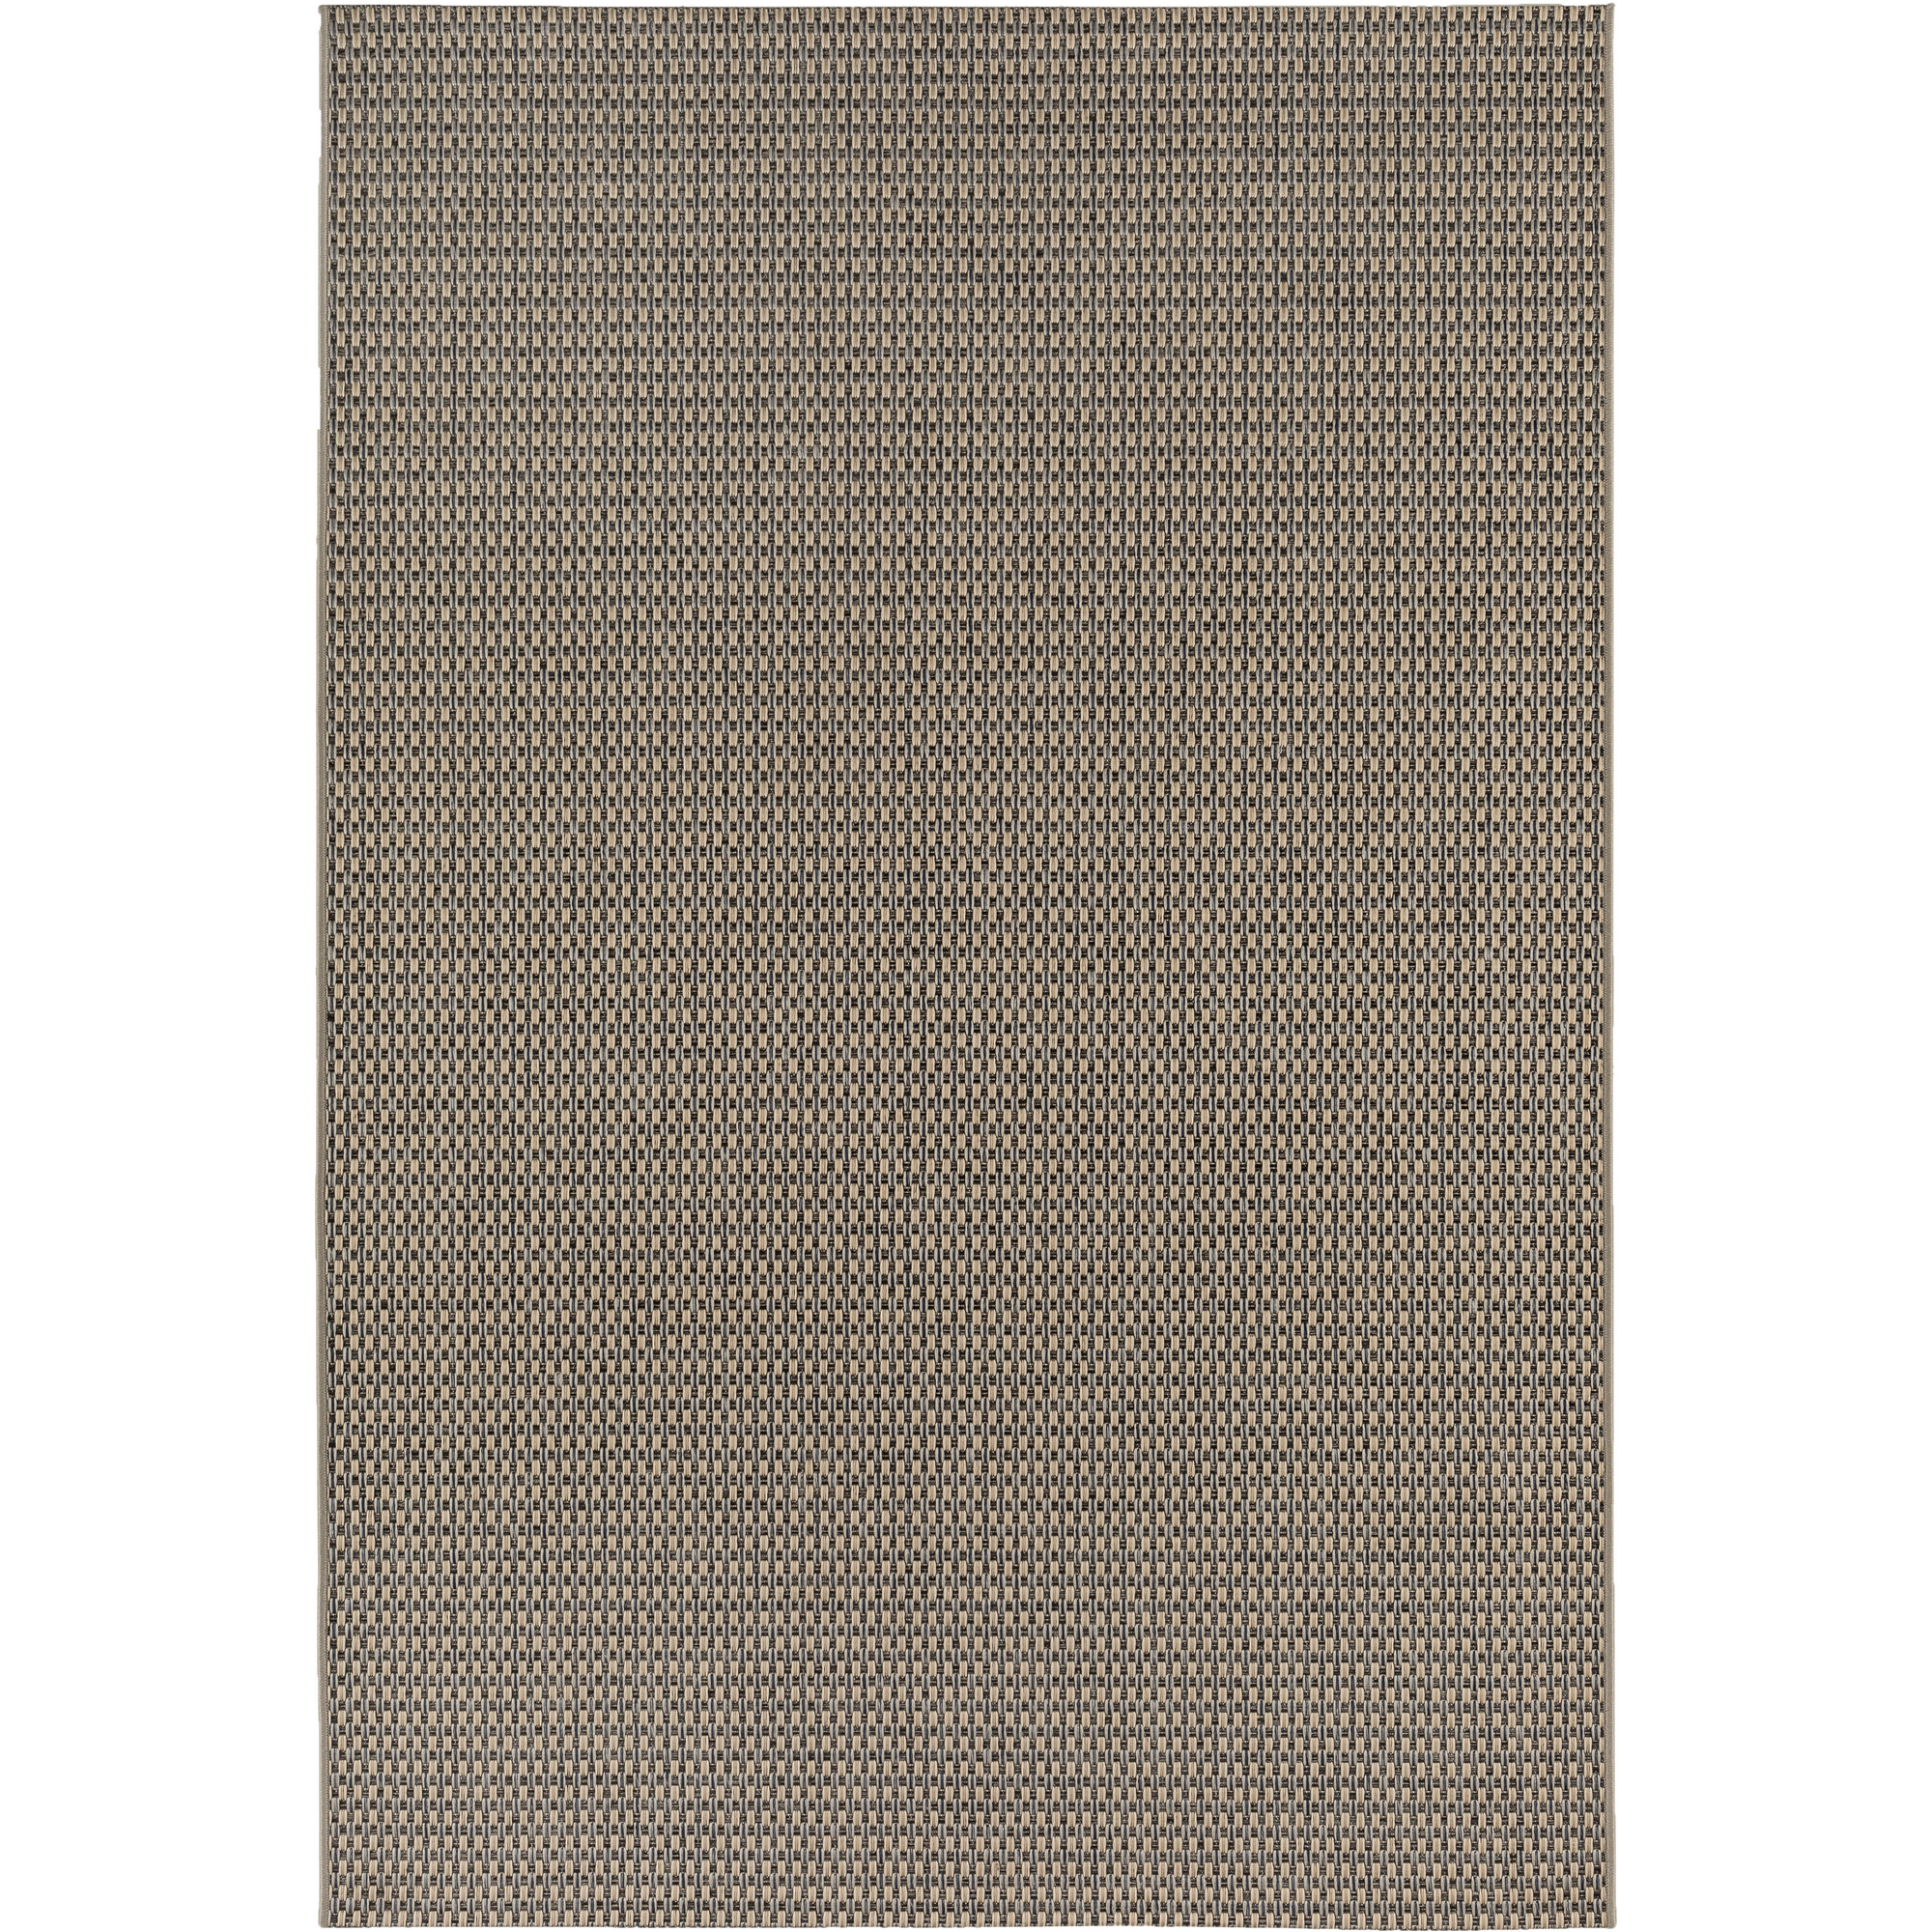 Teppich 'Claudio' beige/grau 120 x 170 cm + product picture